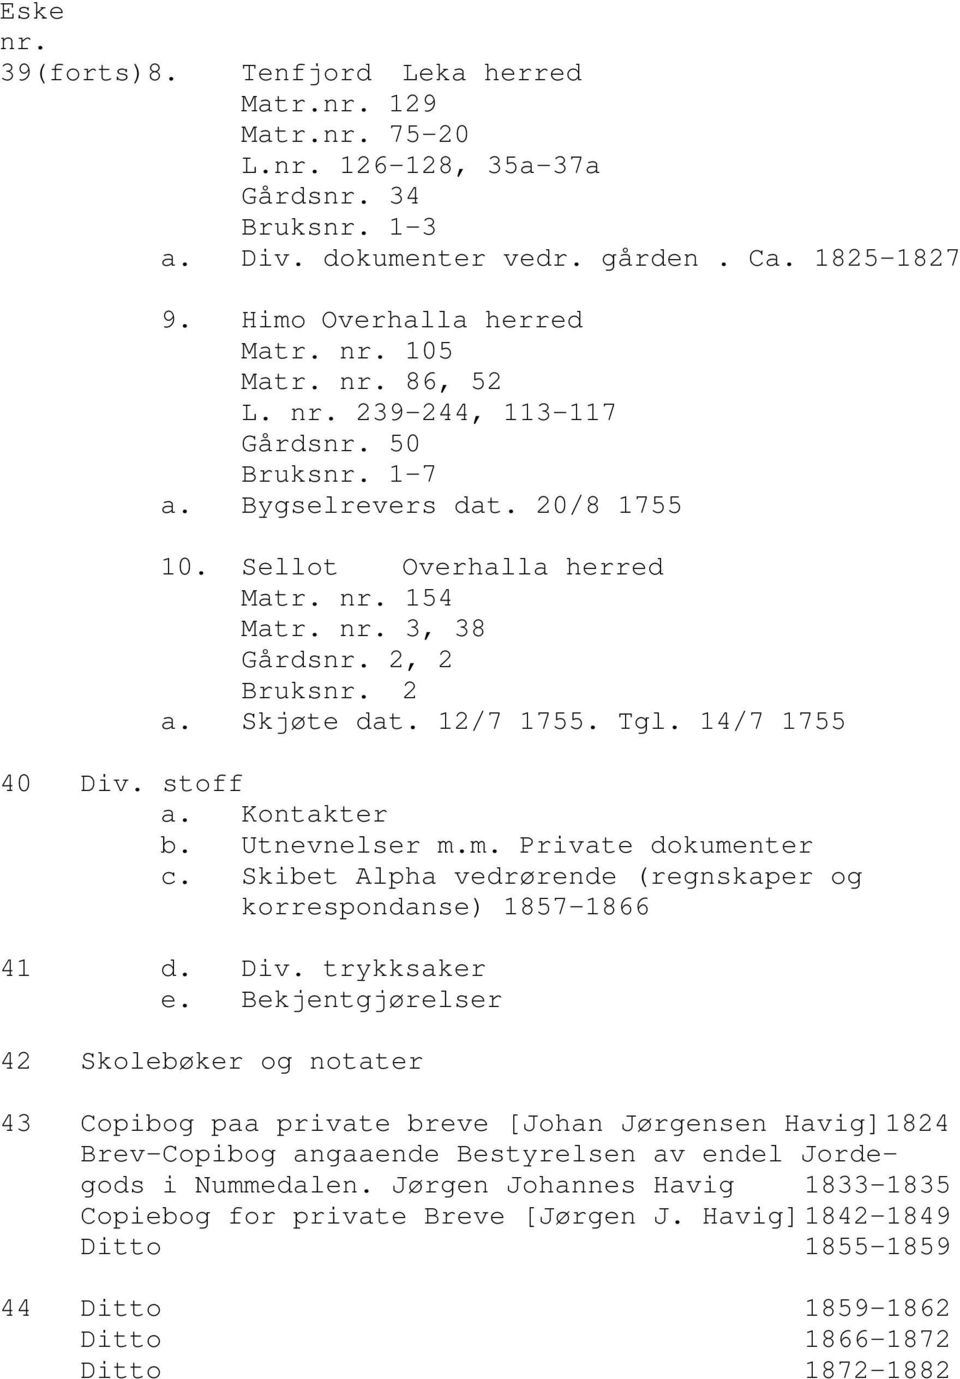 Kontakter b. Utnevnelser m.m. Private dokumenter c. Skibet Alpha vedrørende (regnskaper og korrespondanse) 1857-1866 41 d. Div. trykksaker e.